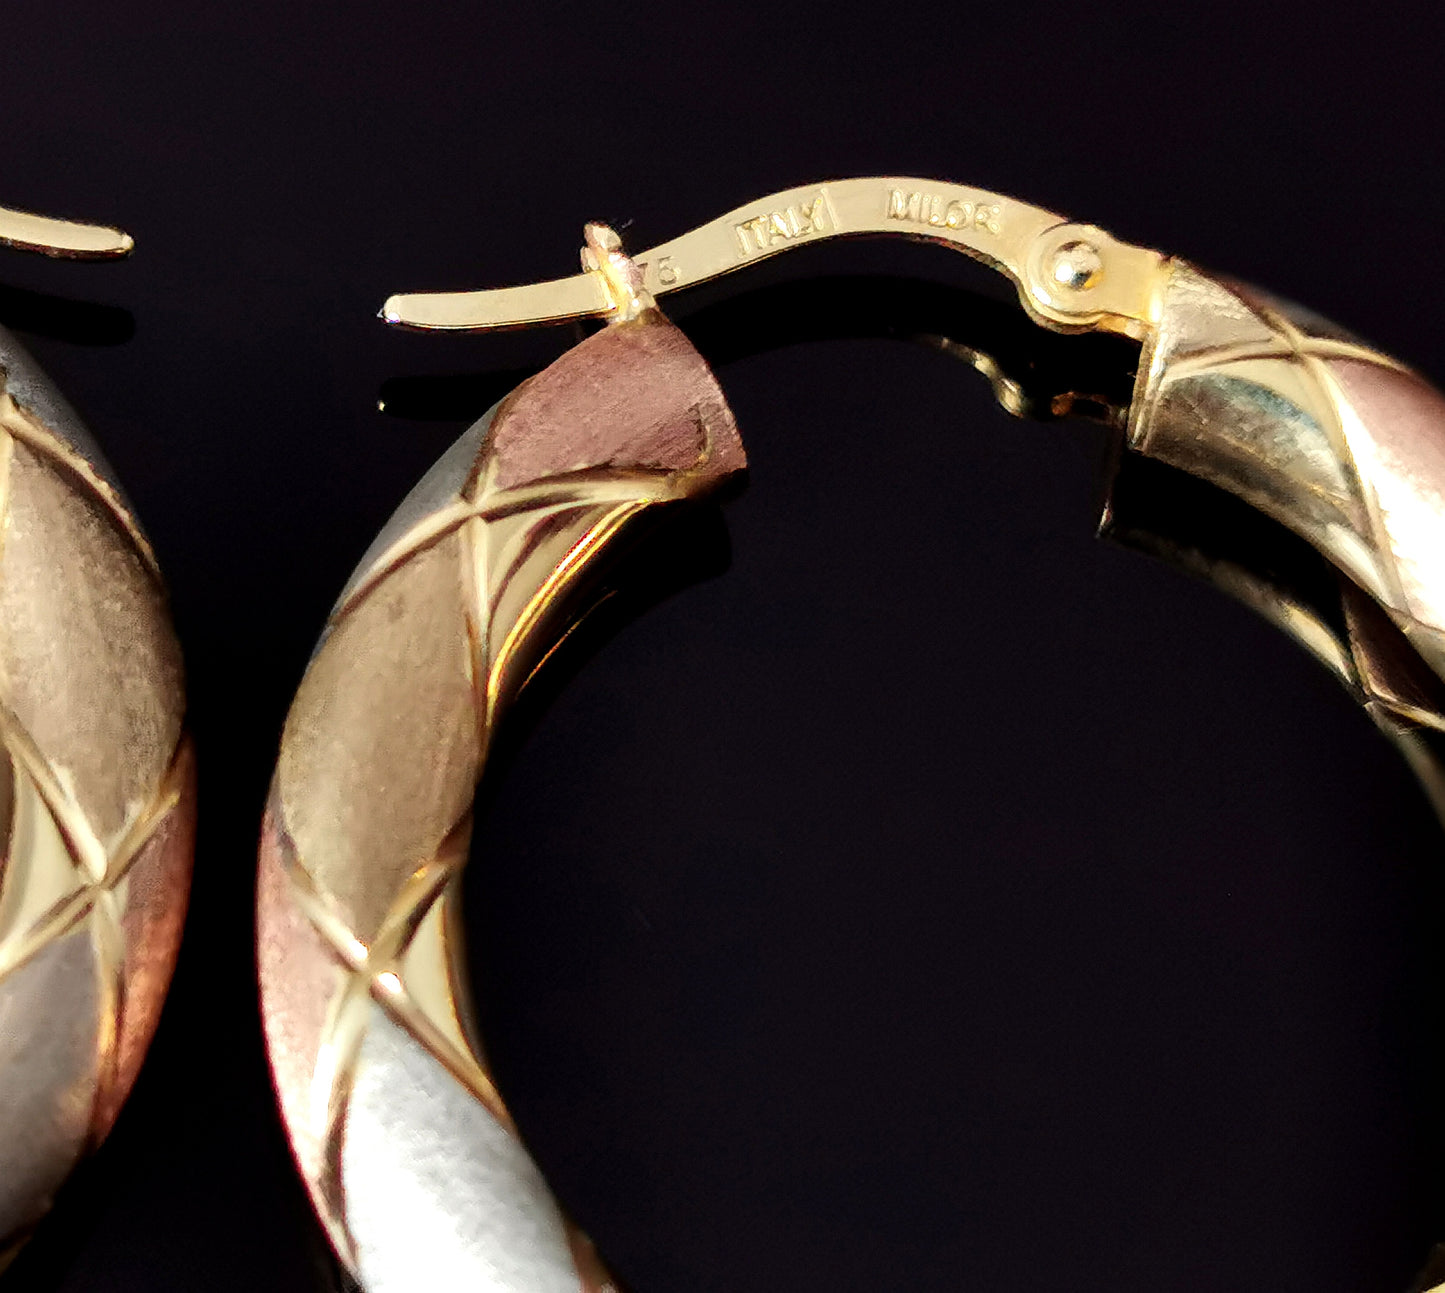 Vintage 9ct tri colour gold hoop earrings, Italian, Engraved